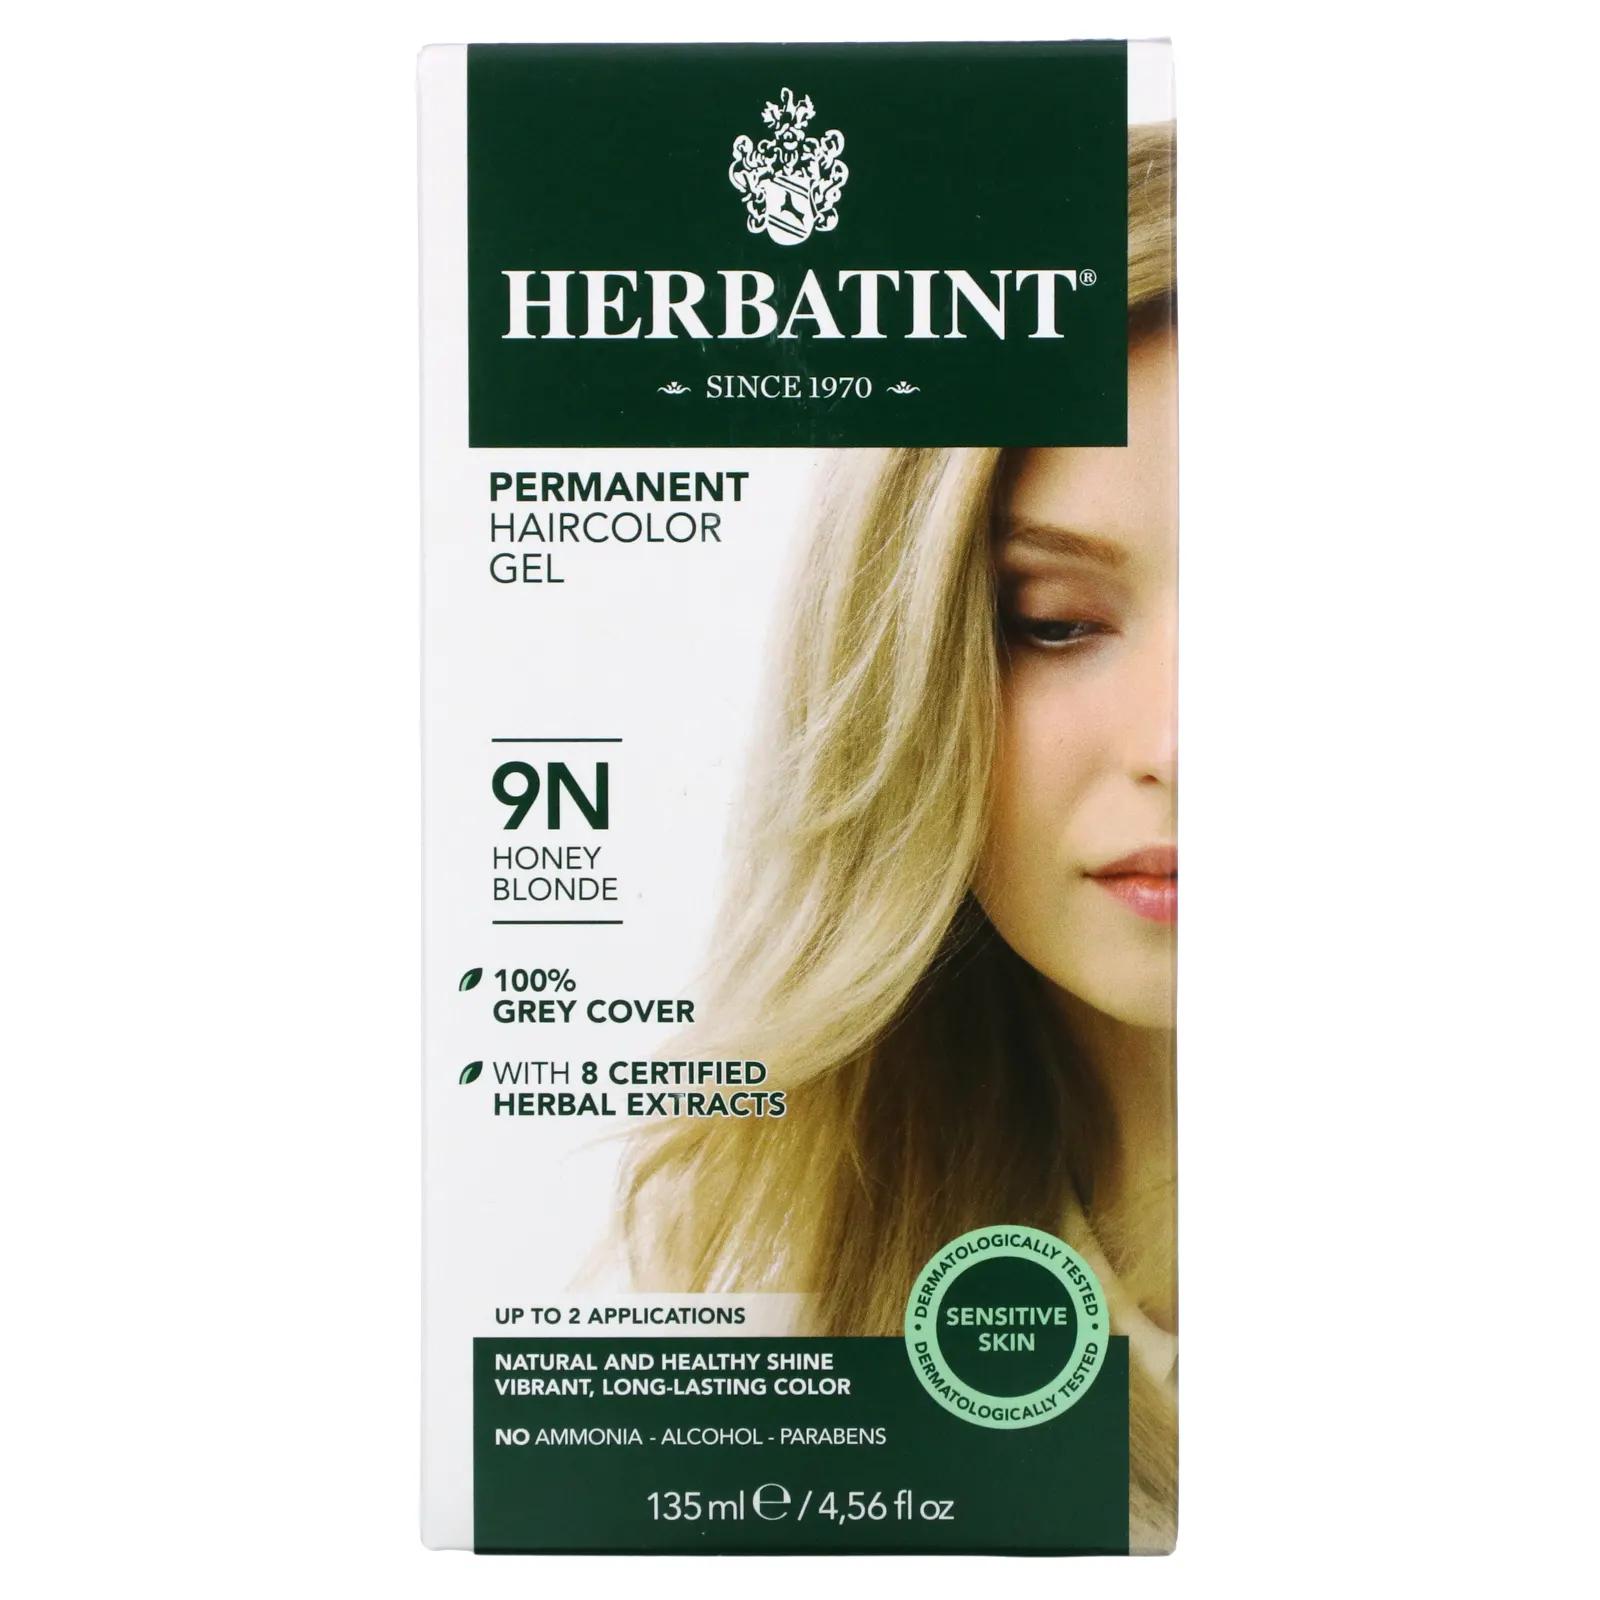 Herbatint Стойкий растительный гель-краска для волос 9N медовый блонд 4,56 жидких унции (135 мл) herbatint стойкая гель краска для волос 9n медовый блонд 135 мл 4 56 жидк унции